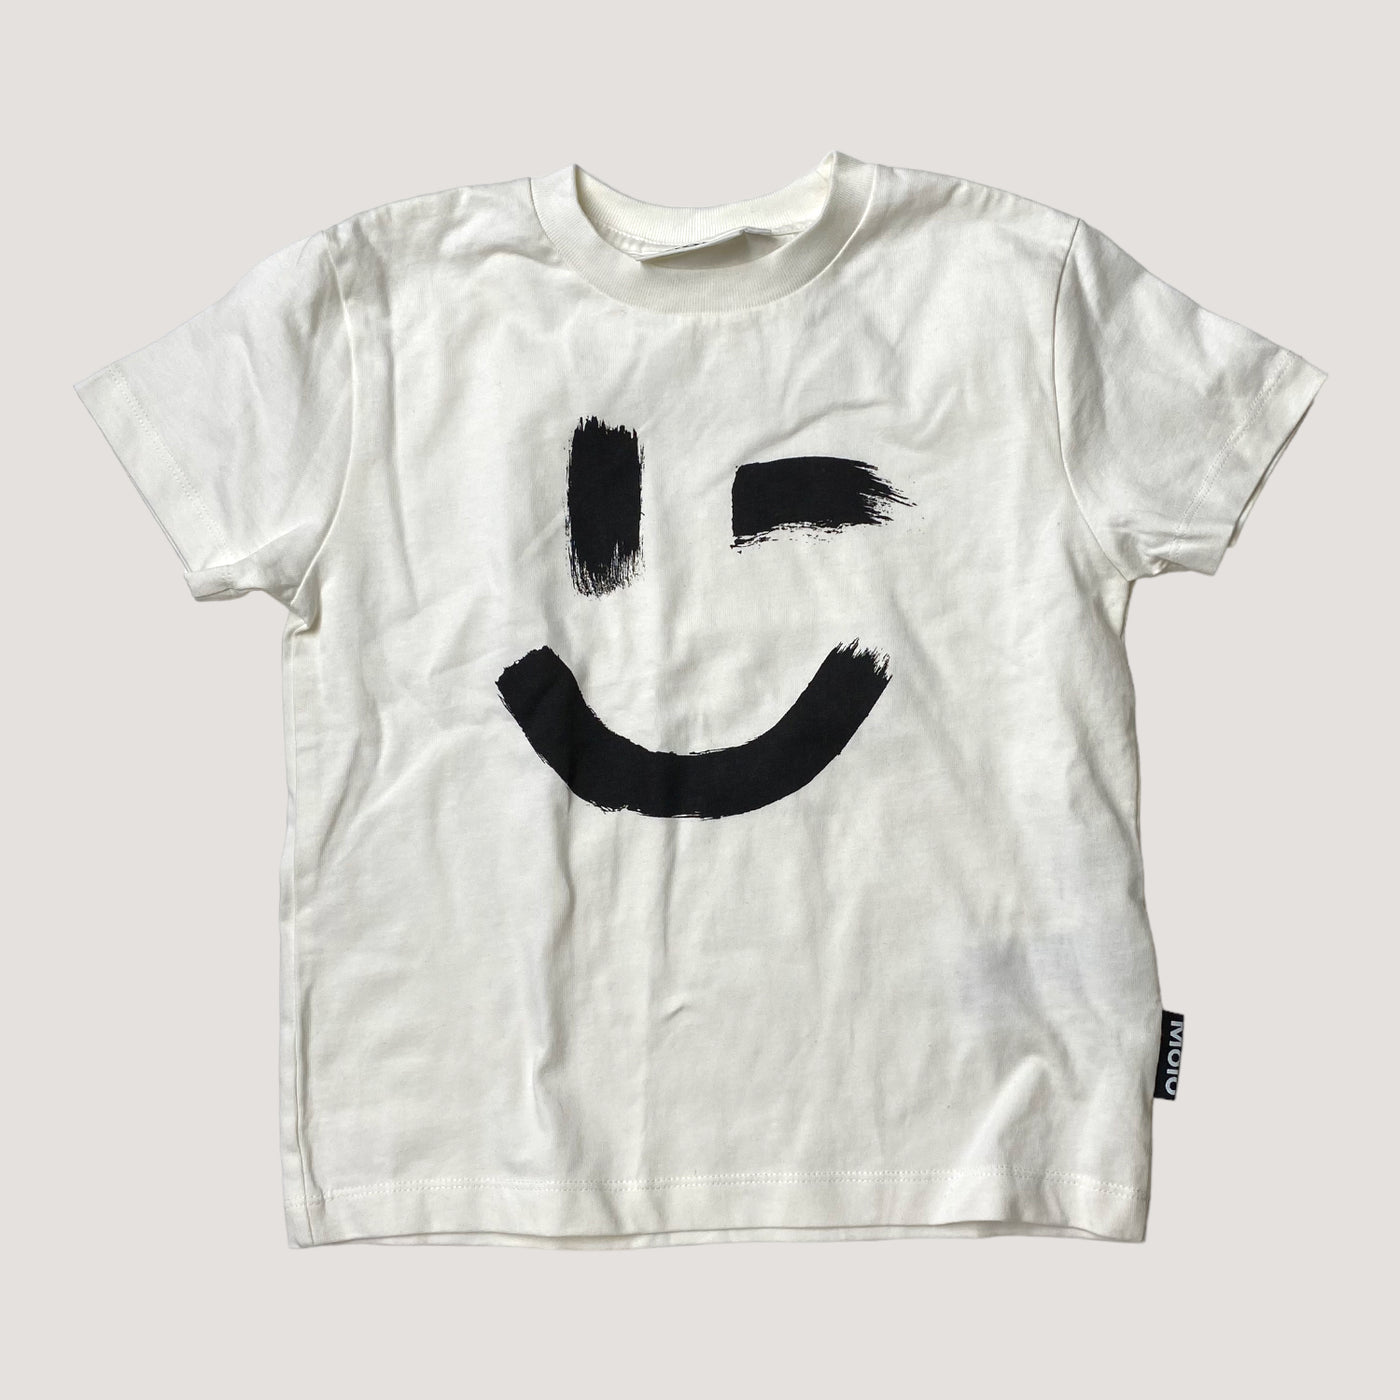 Molo t-shirt, white star | 104cm